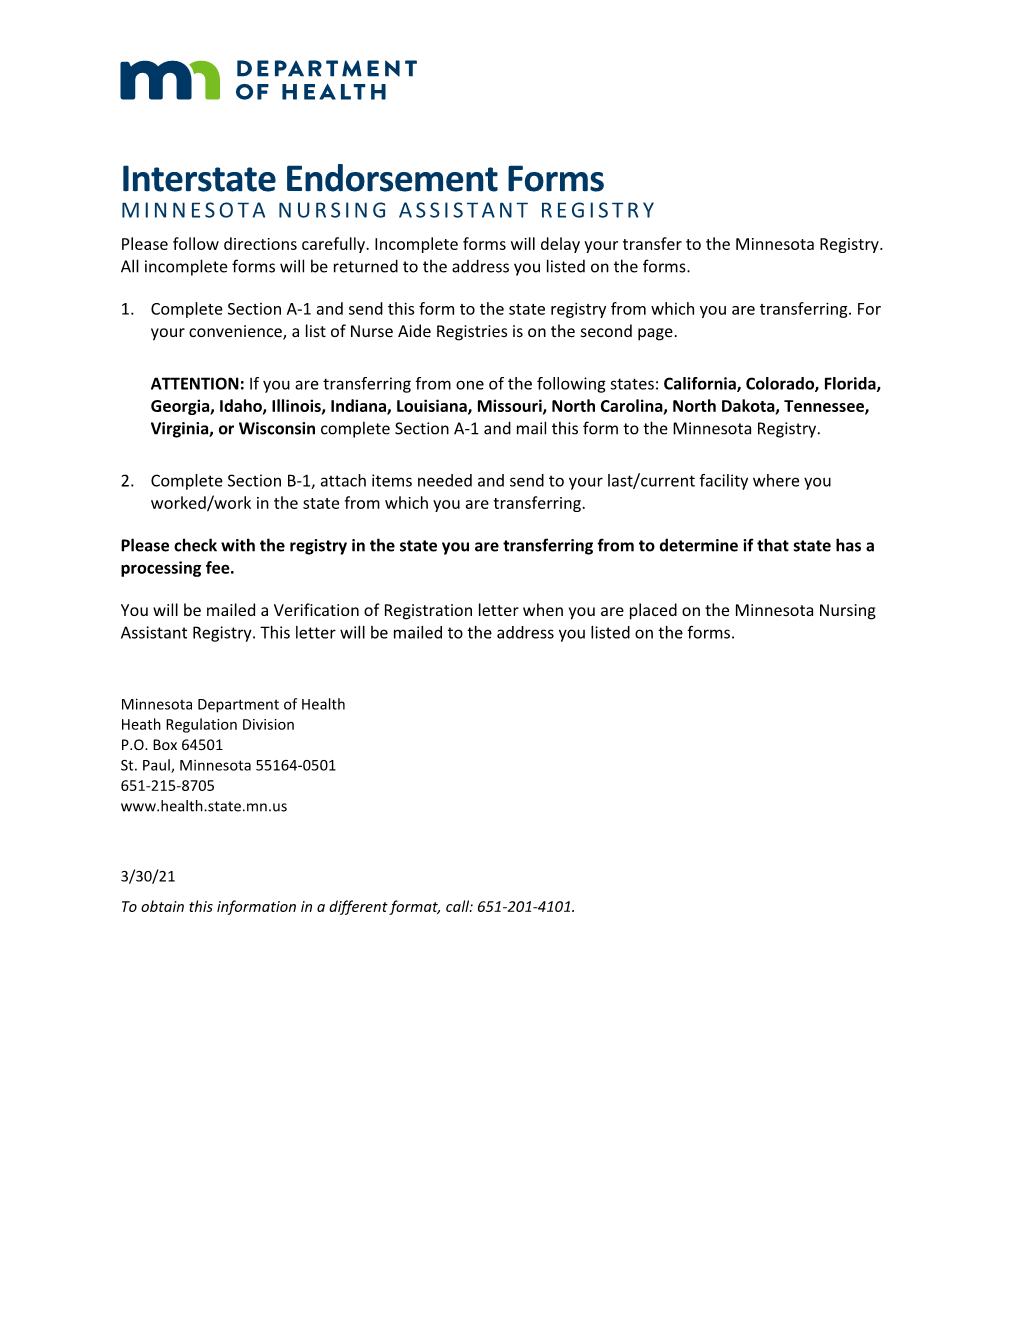 Interstate Endorsement Forms for Minnesota Nursing Assistant Registry